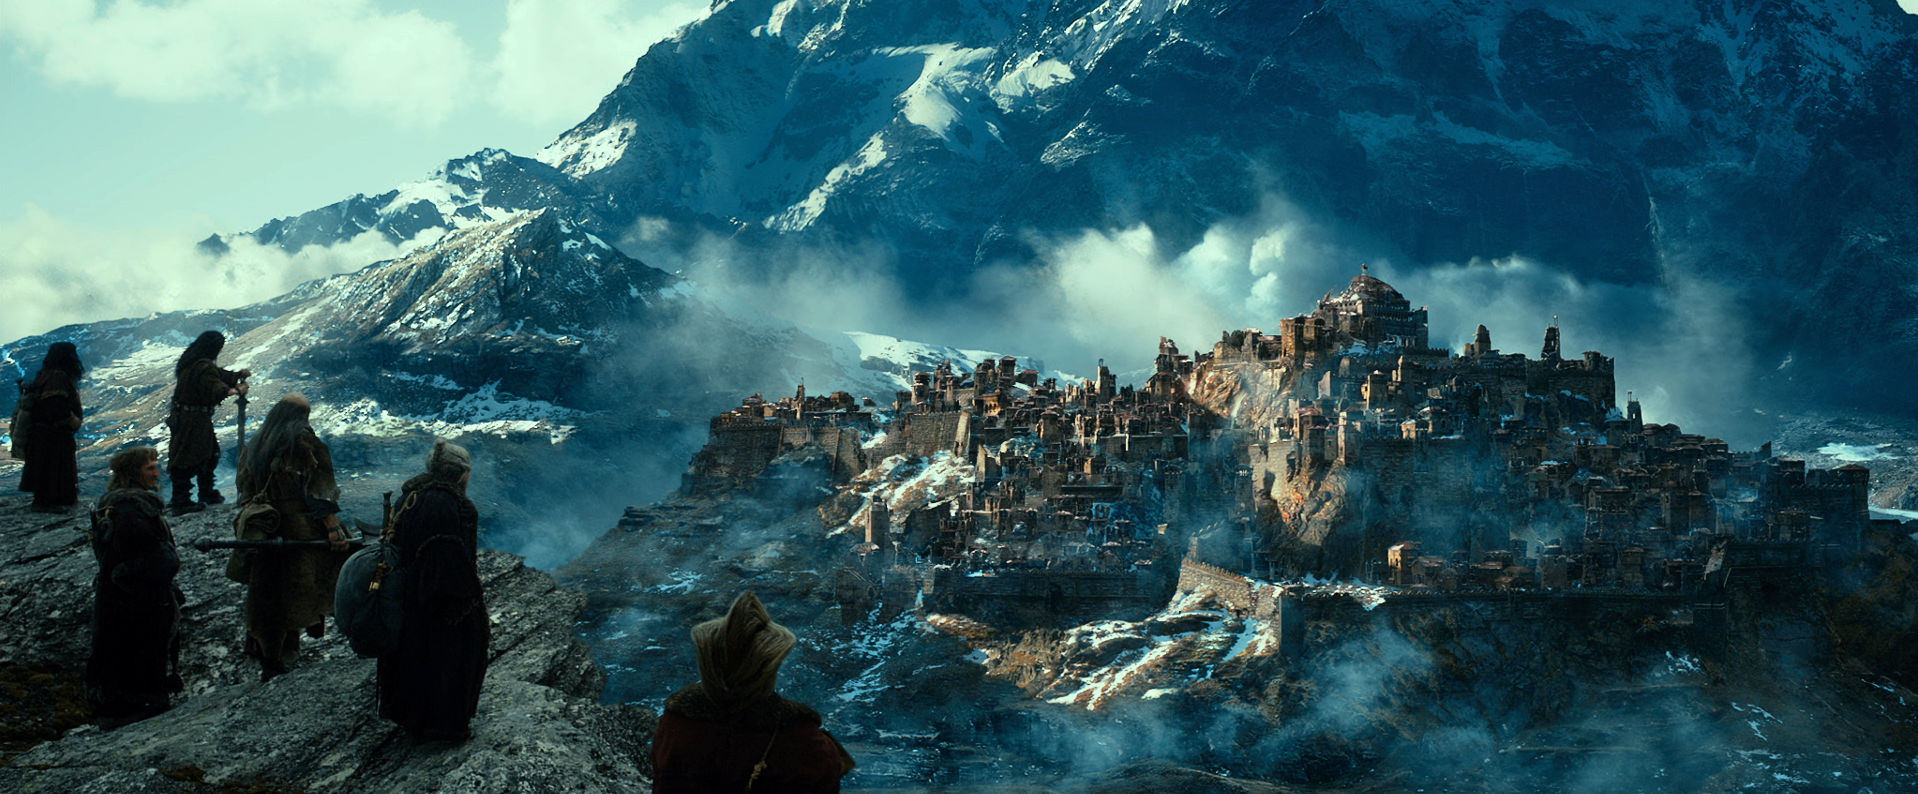 A hobbit - Smaug pusztasága